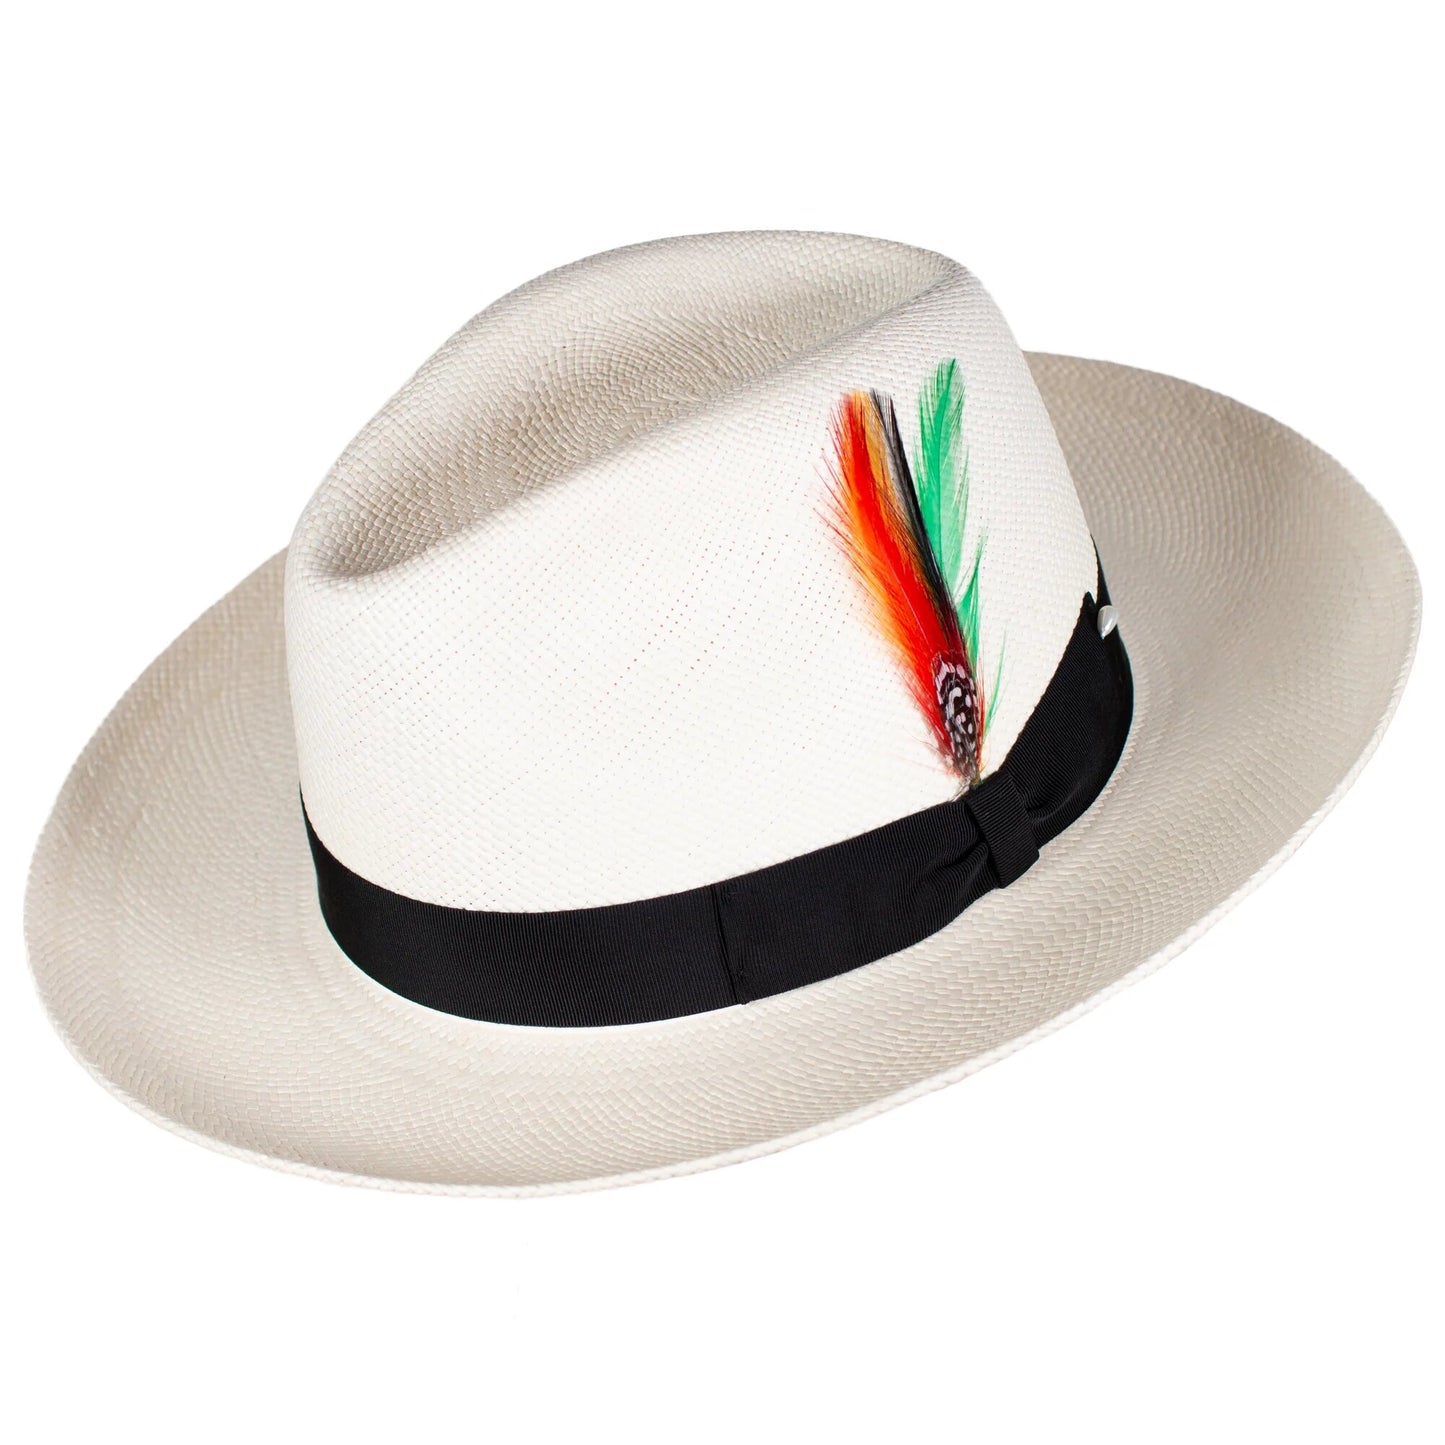 Ricardo | Geniune Panama Hat